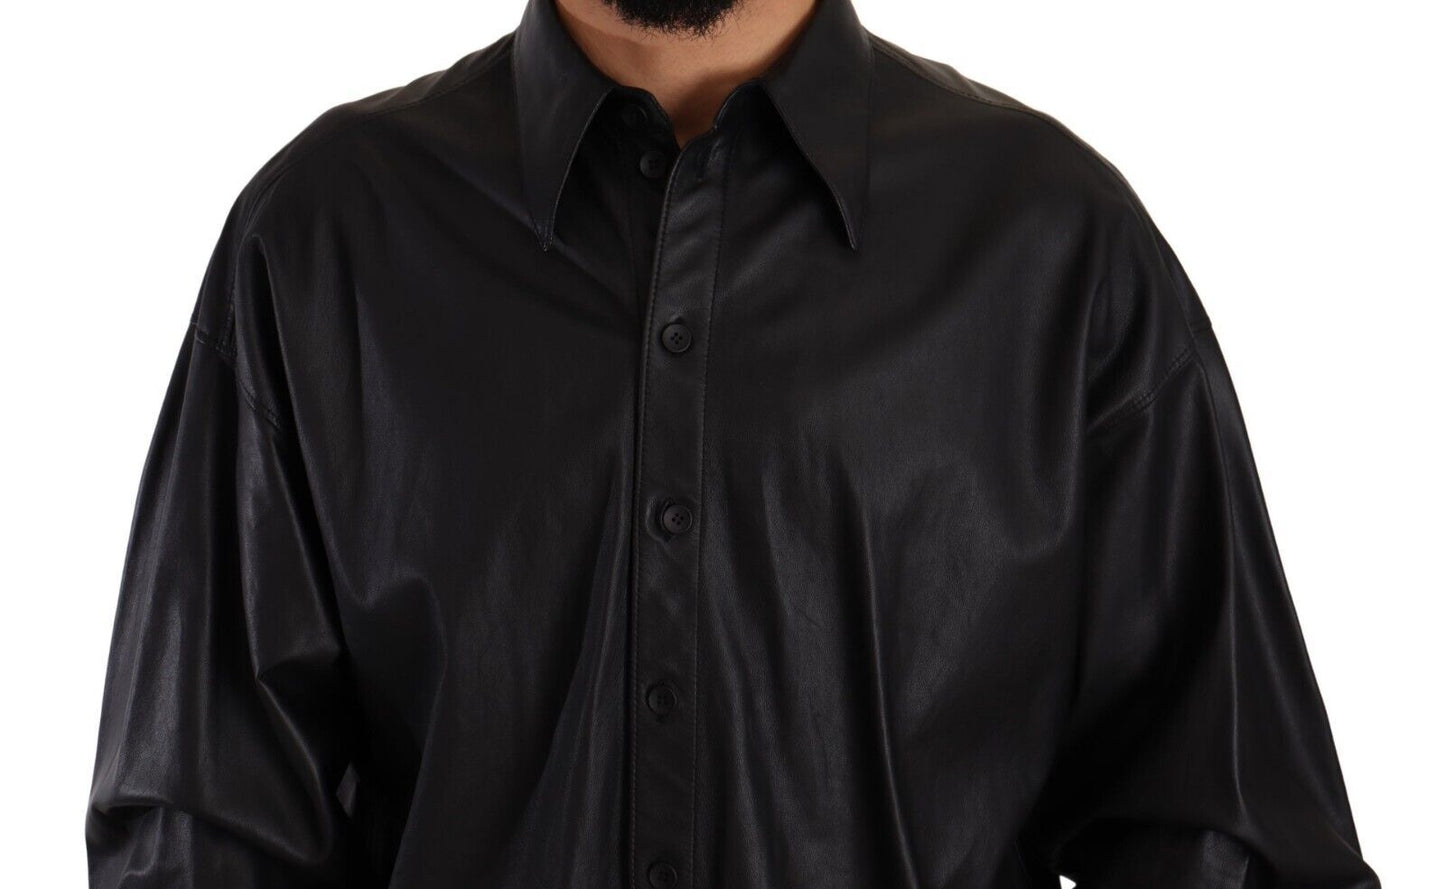 Dolce & Gabbana in pelle nera abbottonata con giacca con colletto